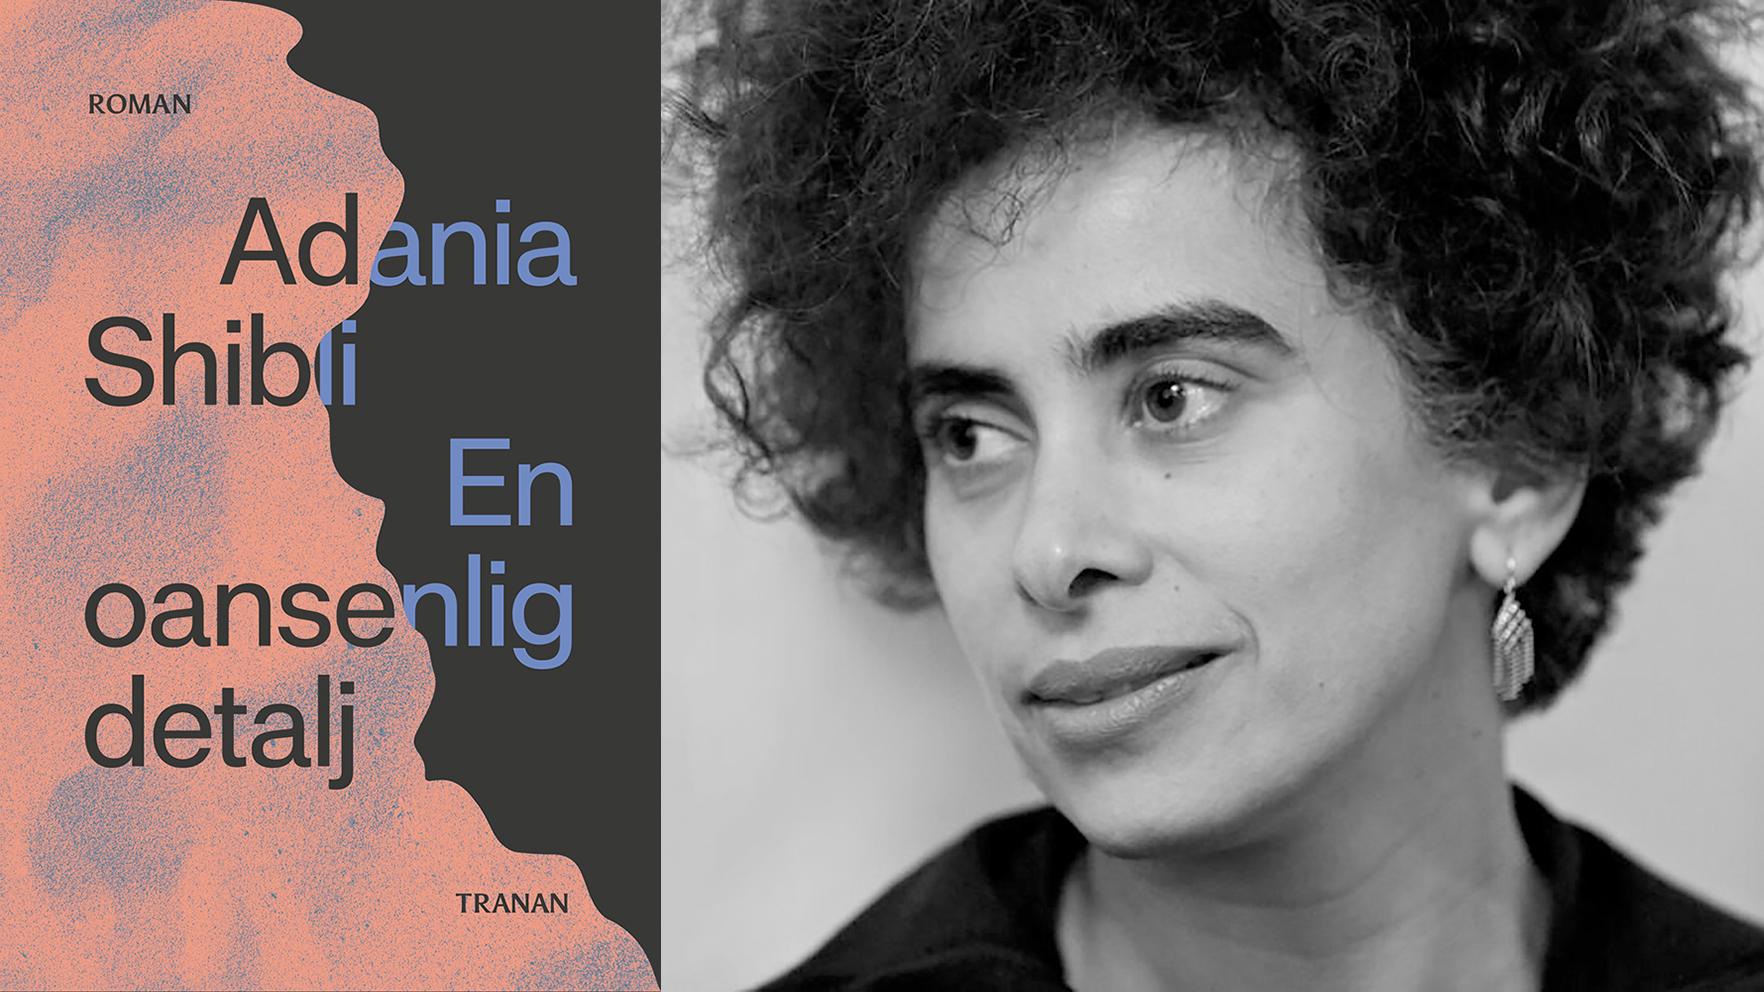 Adania Shibli (född 1974), palestinsk författare som romandebuterade 2002 med ”Masaas”, utgiven på svenska 2018 (”Beröring”). Hon har också publicerat noveller och har disputerat i media- och kulturstudier. ”En oansenlig detalj” är hennes tredje roman.